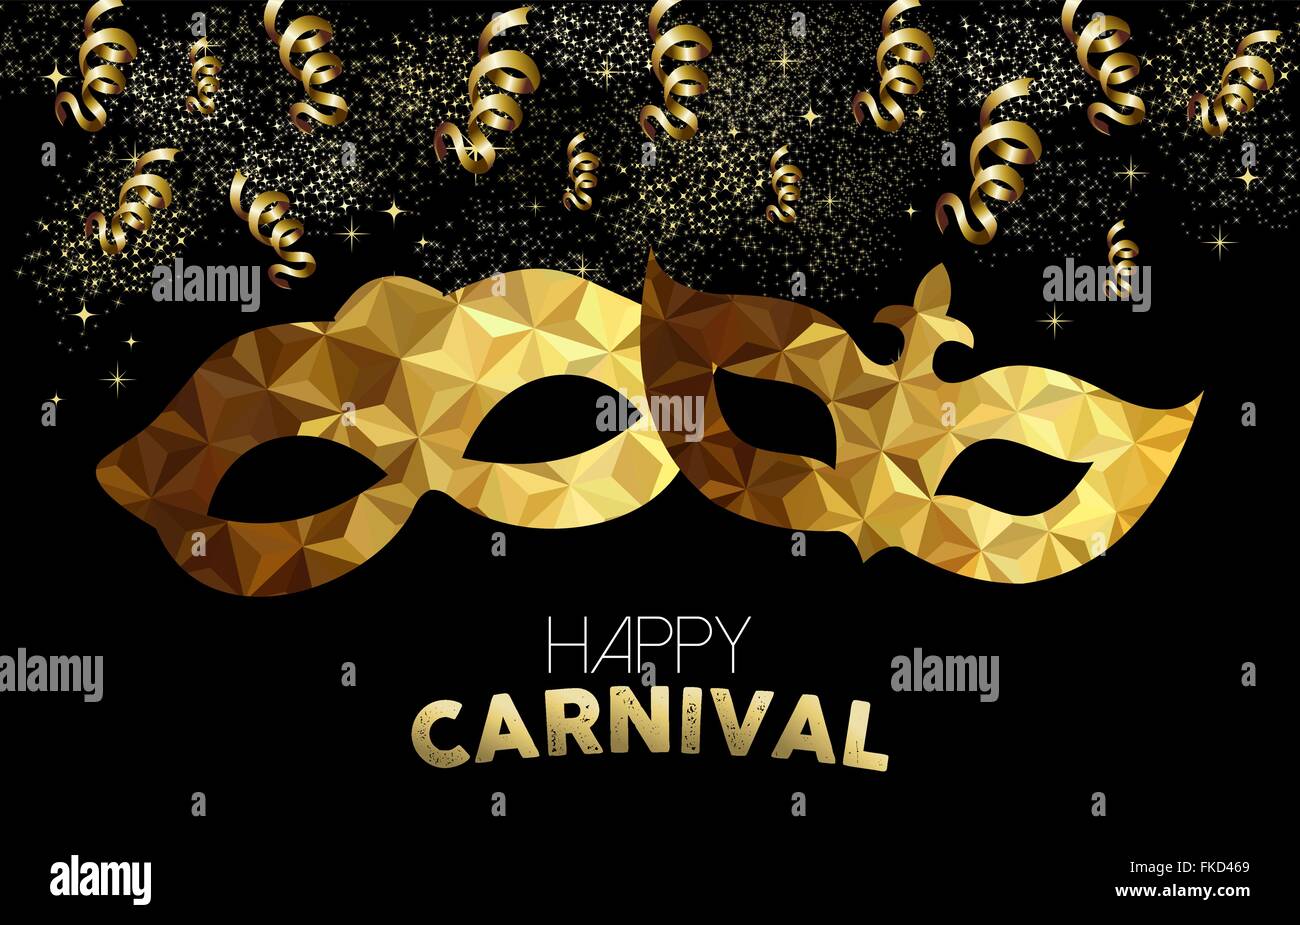 Carnaval d'or design. Les masques avec texte poly faible, banderoles et parti d'or confettis. Vecteur EPS10. Illustration de Vecteur